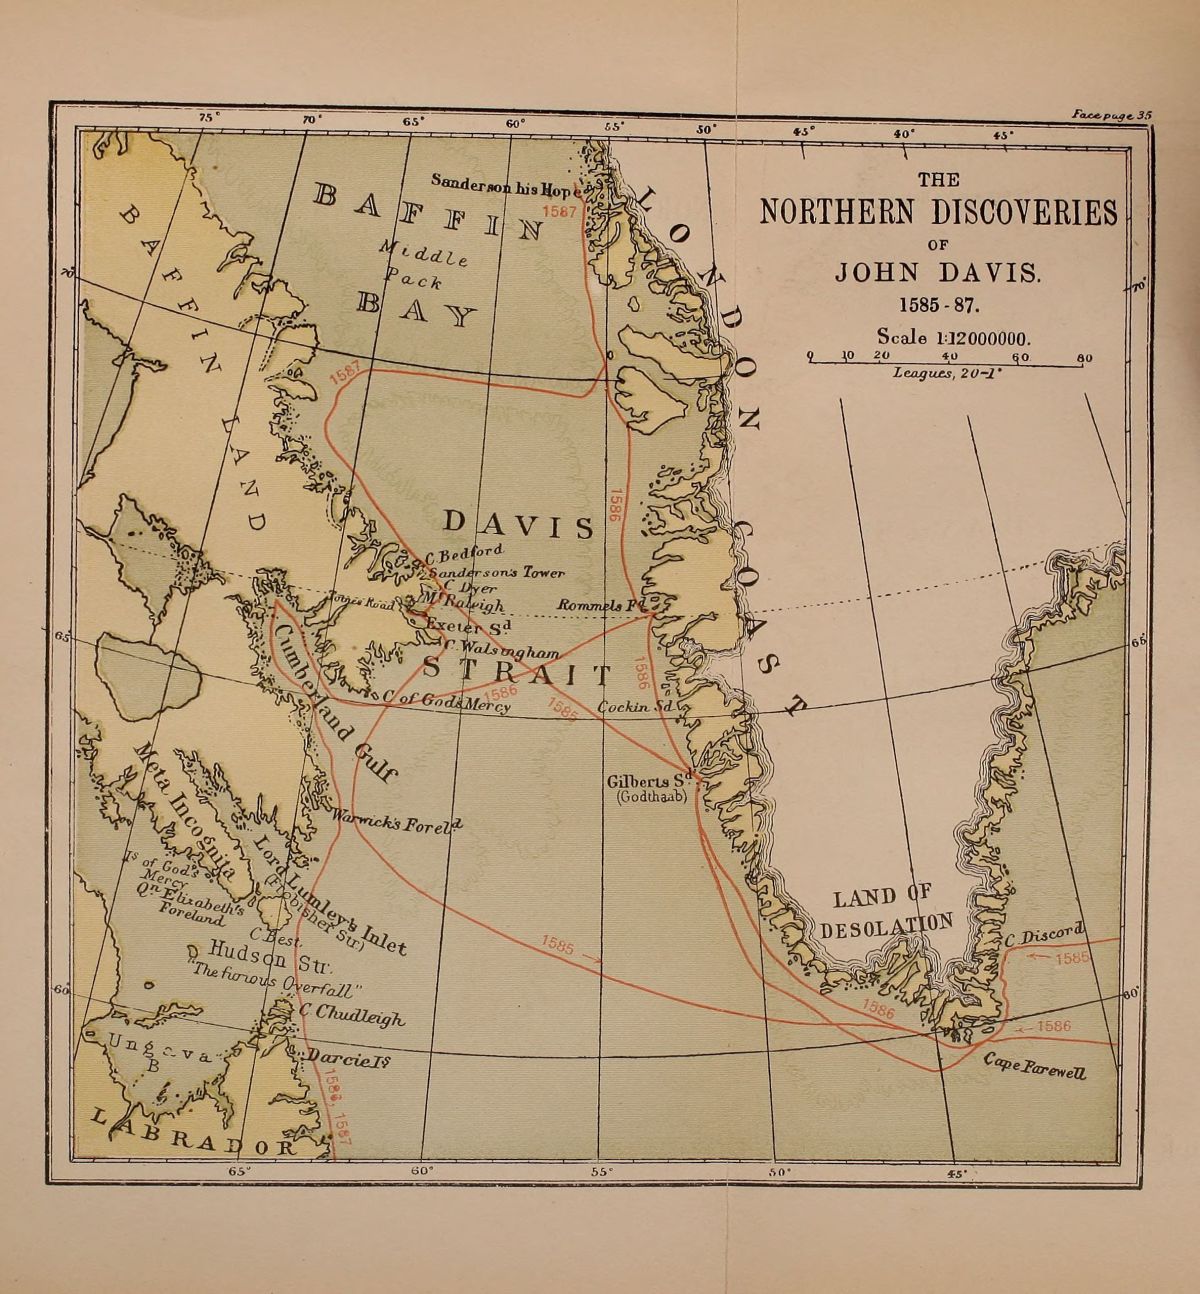 Precolonial North American History: Second Arctic voyage of John Davis